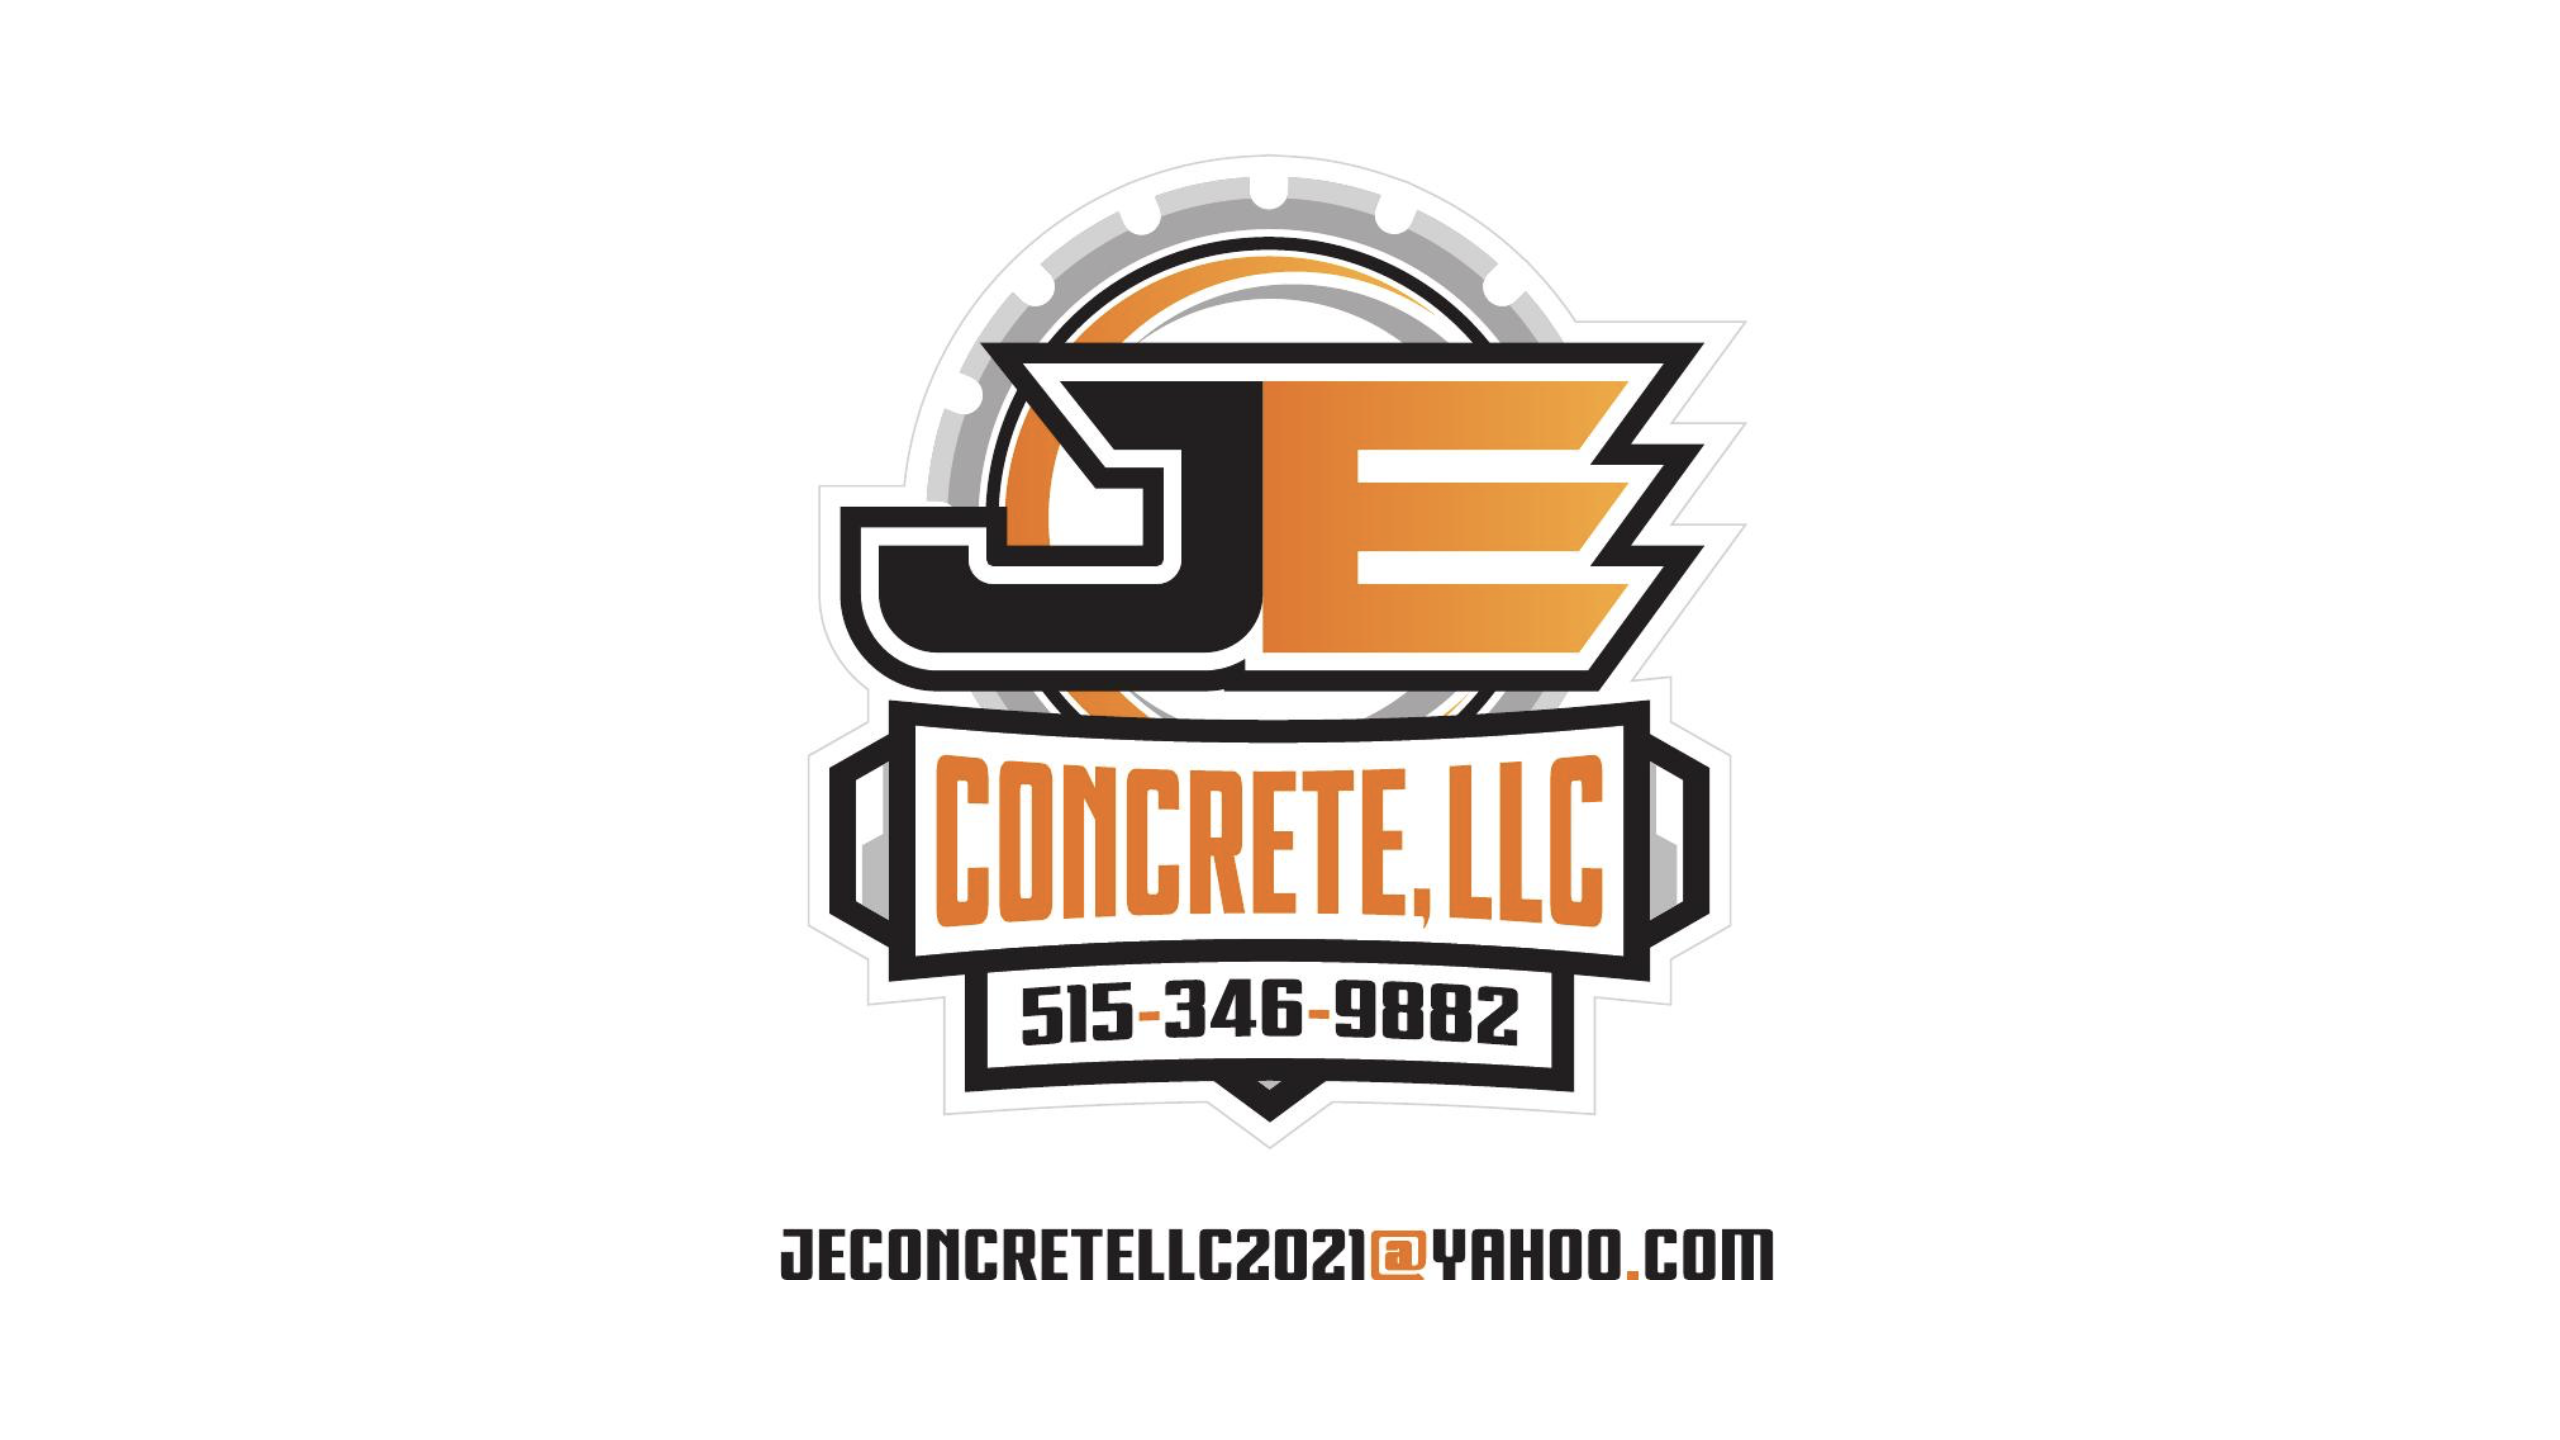 J E Concrete, LLC Logo